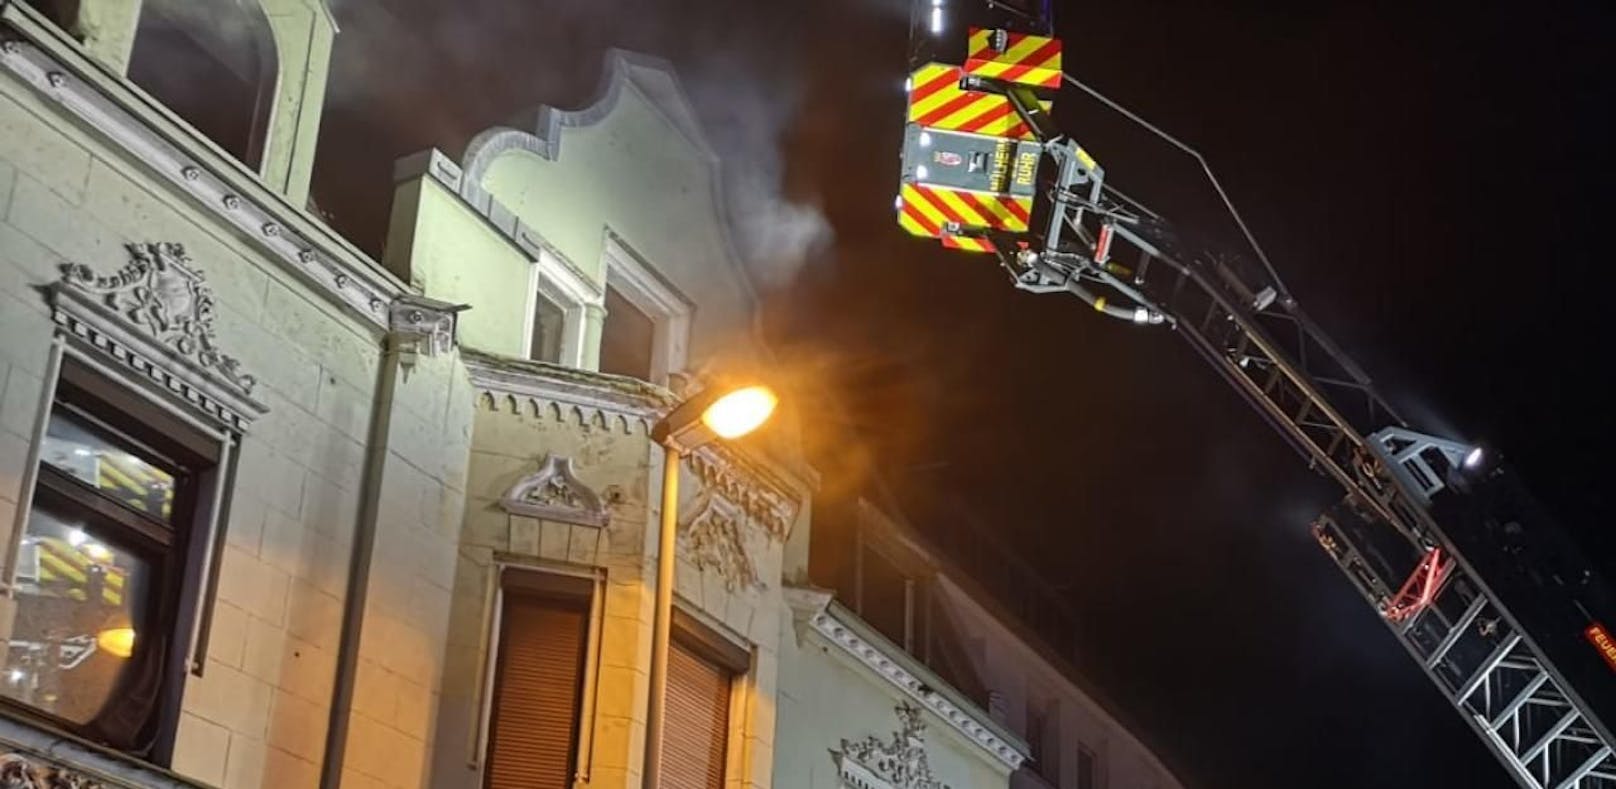 Ungewöhnliche Brandursache: Vier Personen wurden aus dem verrauchten Mehrfamilienhaus.